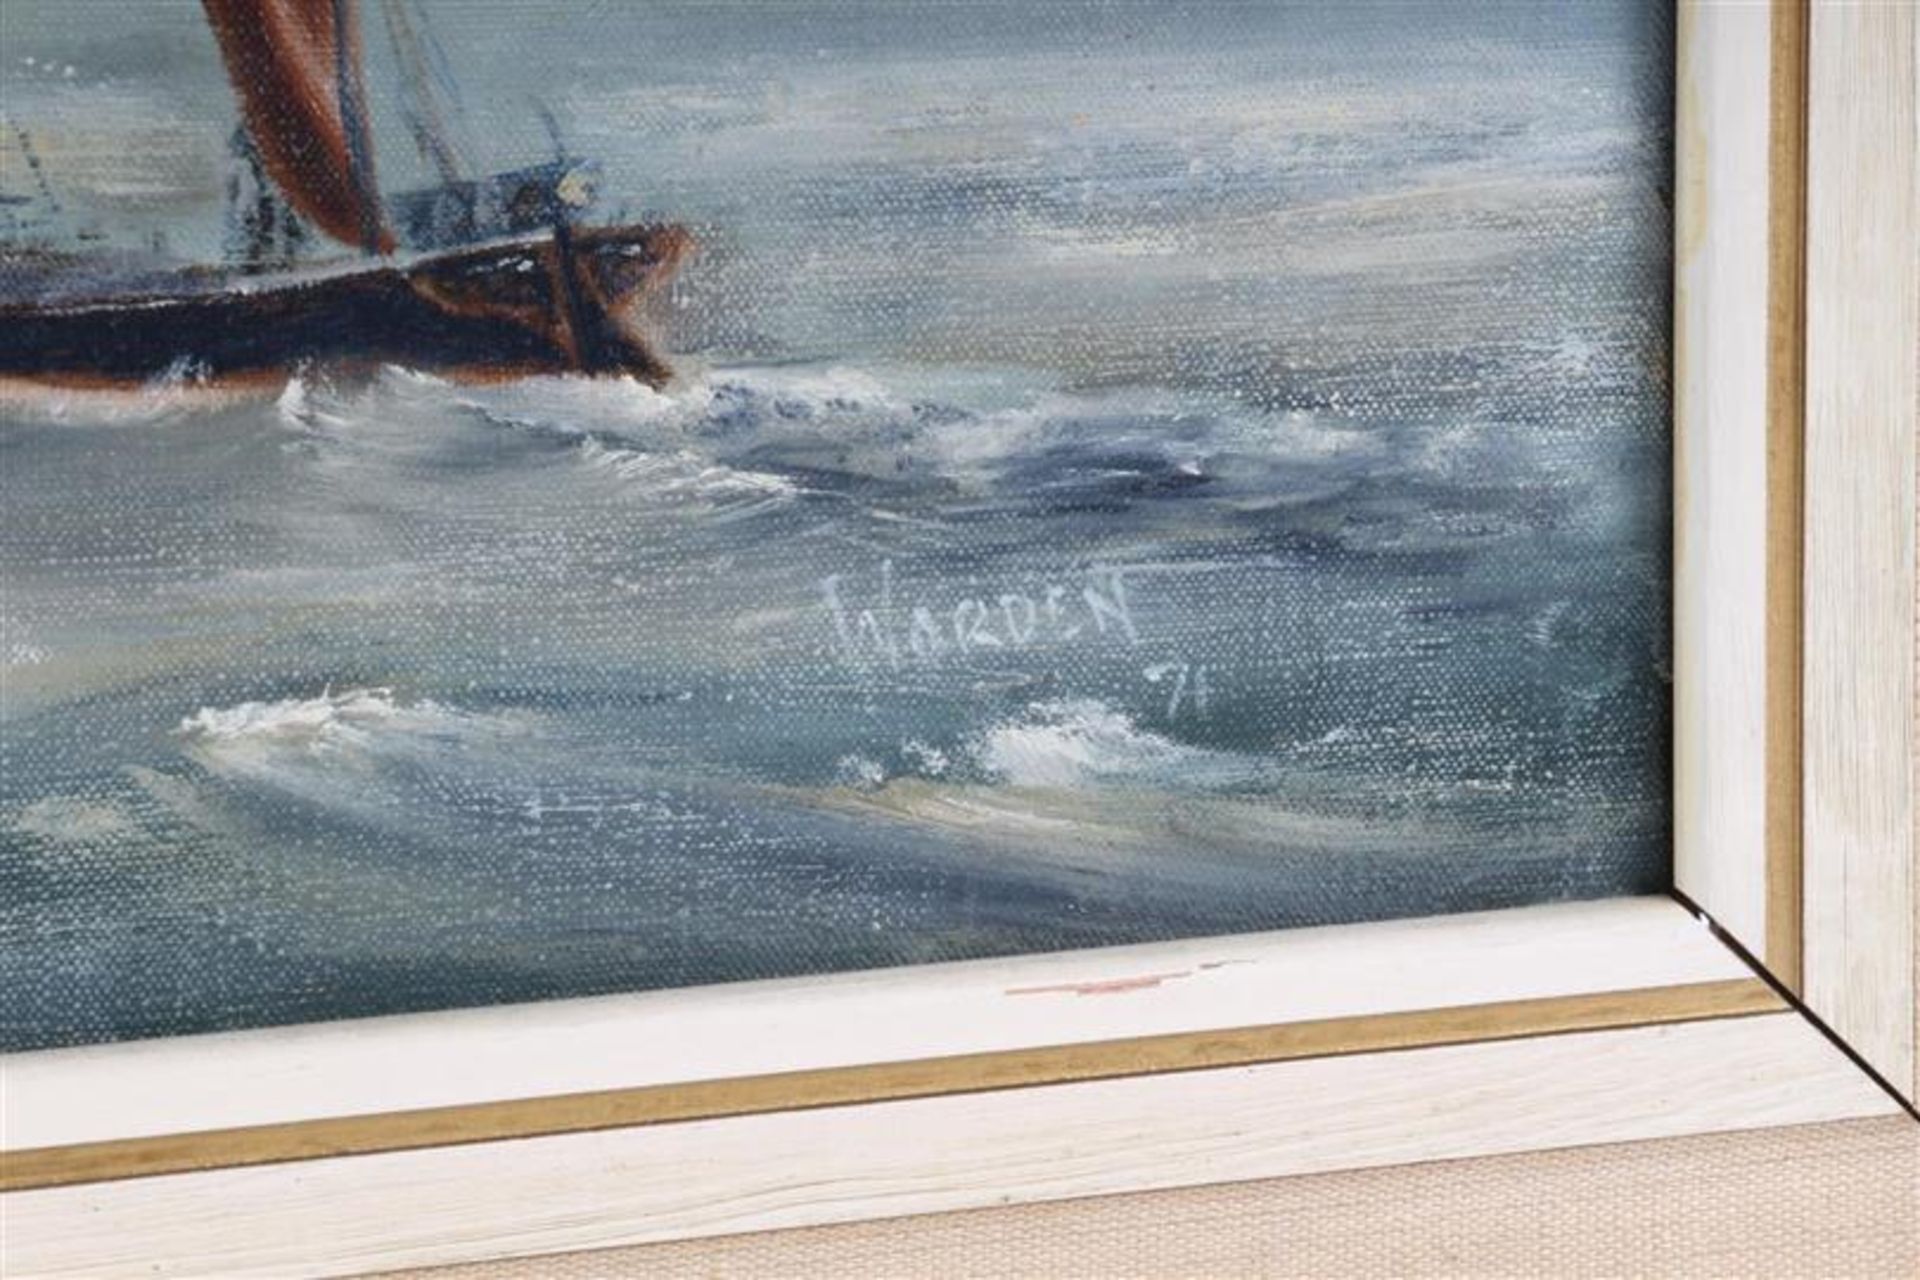 Schilderij op doek 'Scheepvaart', gesigneerd Warden '71. HxB: 44.5 x 75 cm. - Bild 3 aus 4